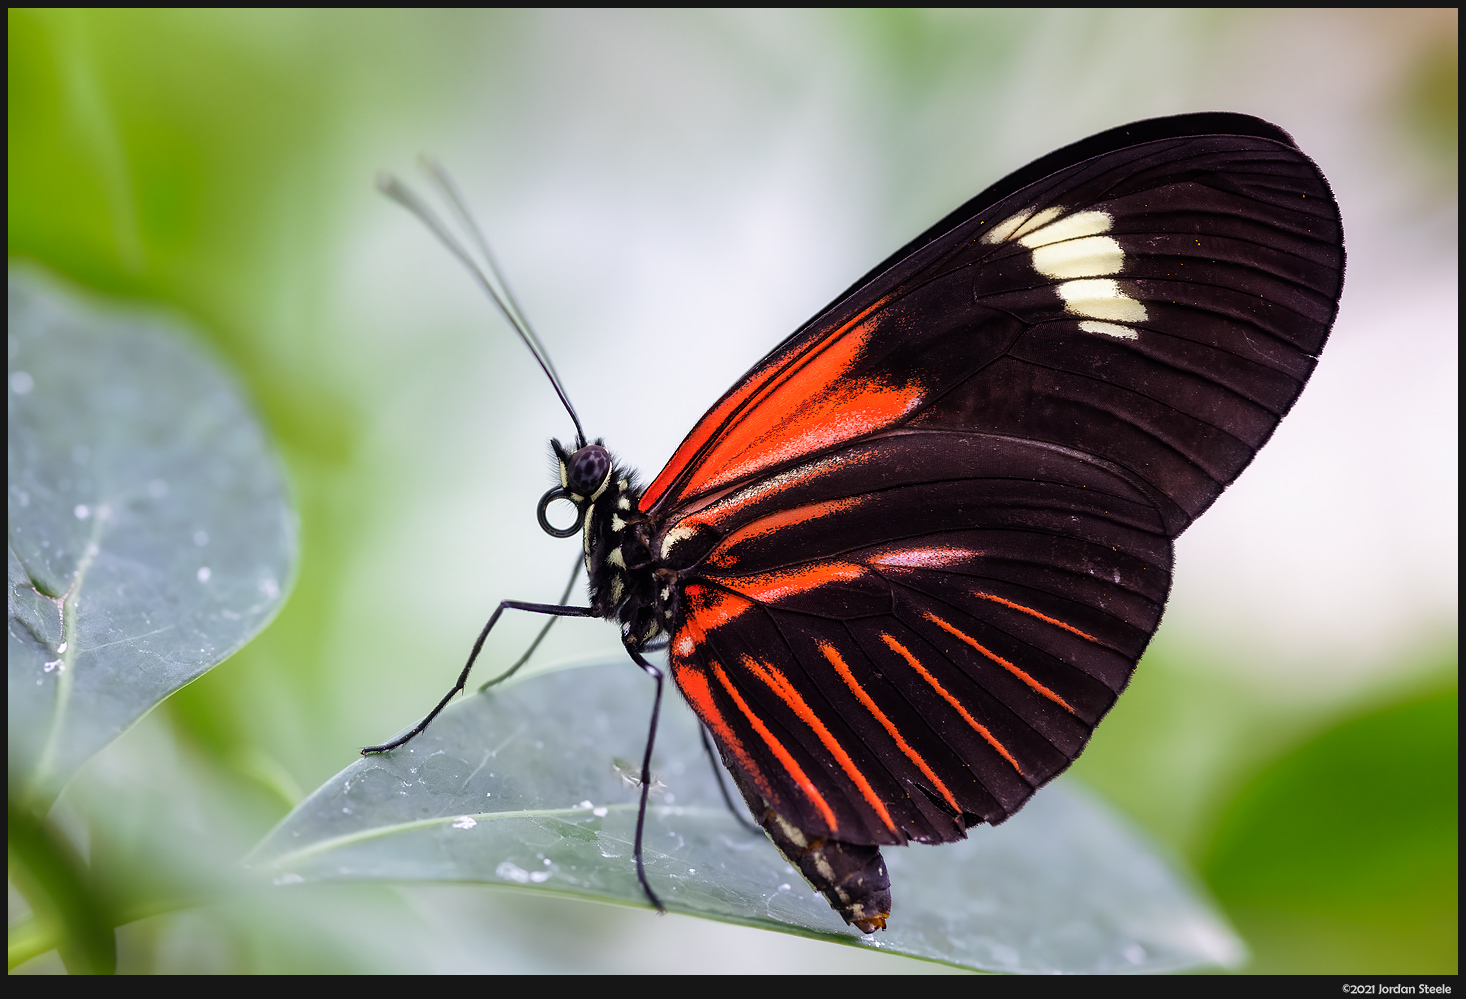 IMAGE: http://www.jordansteele.com/2021/butterfly2_potn.jpg